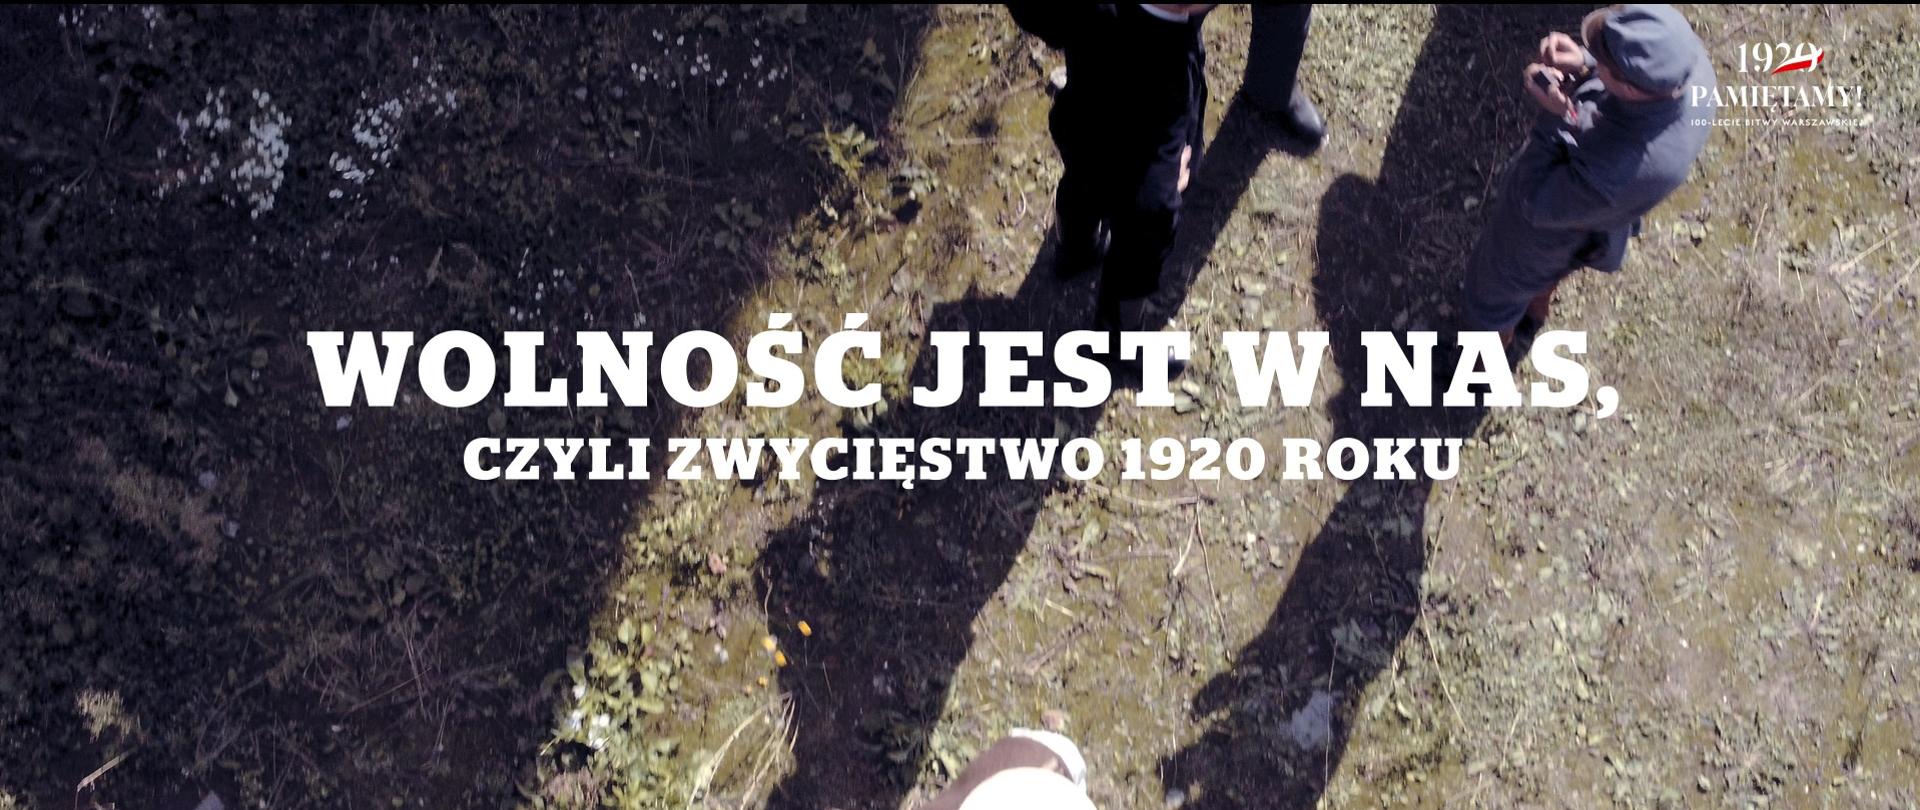 Film pt. „Wolność jest w nas, czyli zwycięstwo 1920 roku”, Mazowieckiego Urzędu Wojewódzkiego w Warszawie, nagrodzony!